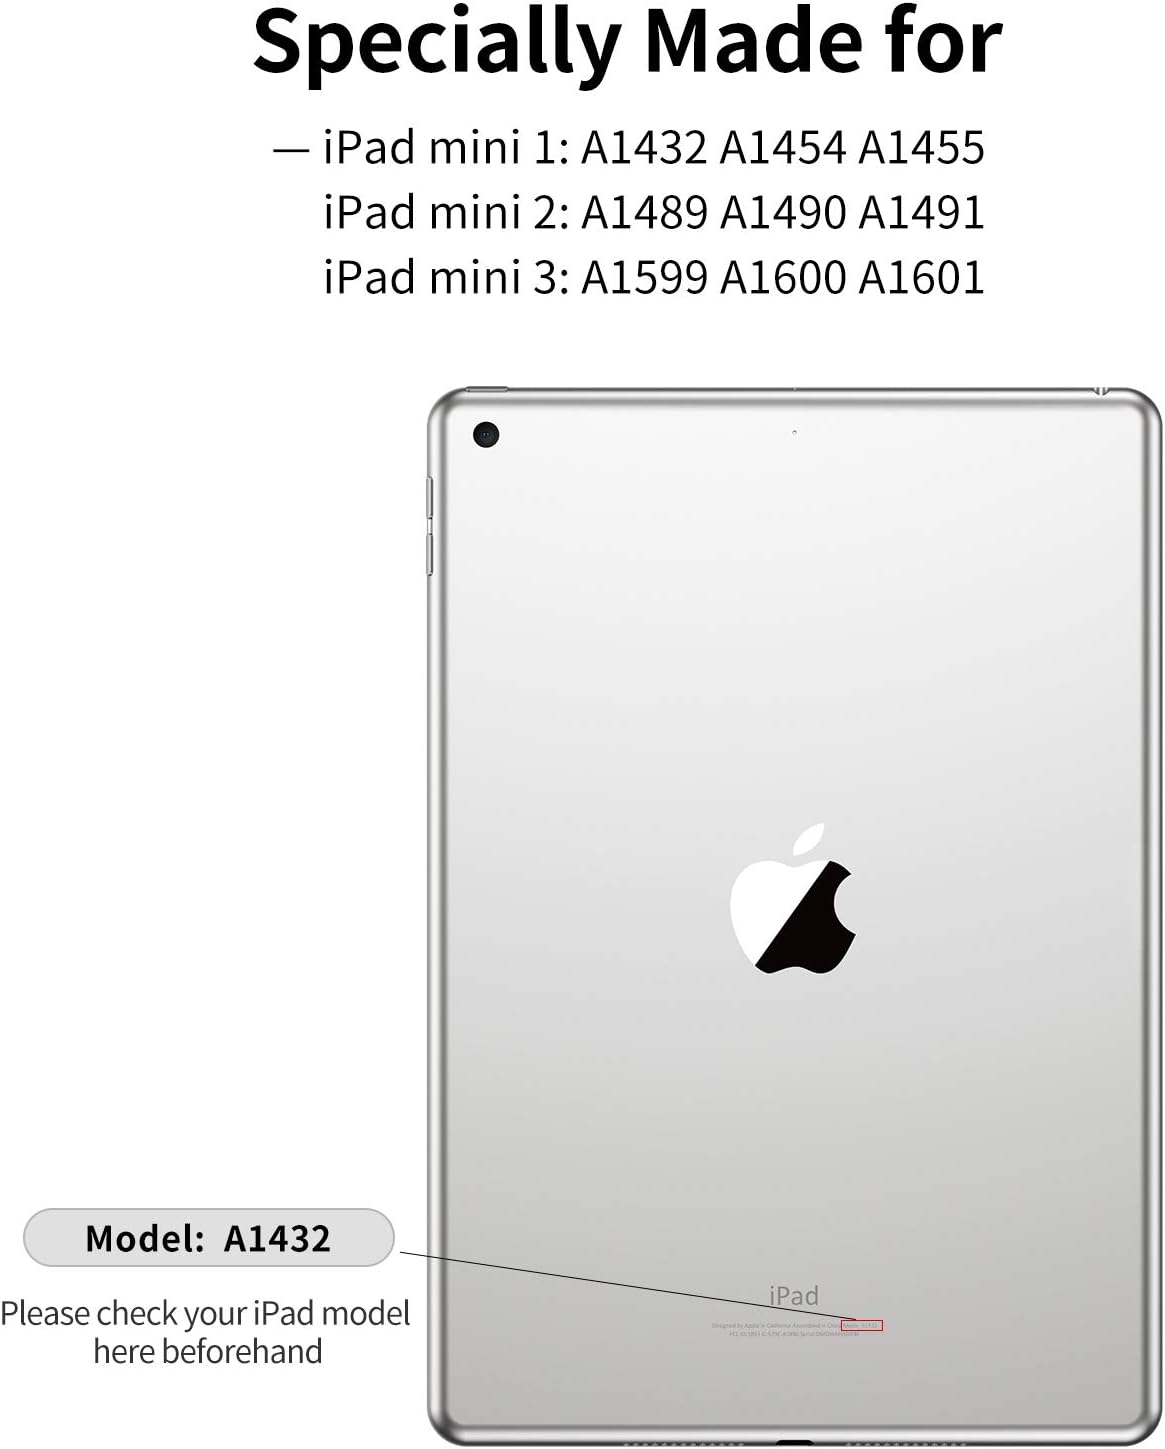 SmartDevil Funda para iPad mini 3 / Funda para iPad mini 2 / Funda para iPad mini 1 en estilo retro, funda delgada a prueba de golpes de 7,9 pulgadas para iPad mini 3 2 1 con función de encendido/apagado automático y soporte - Gris